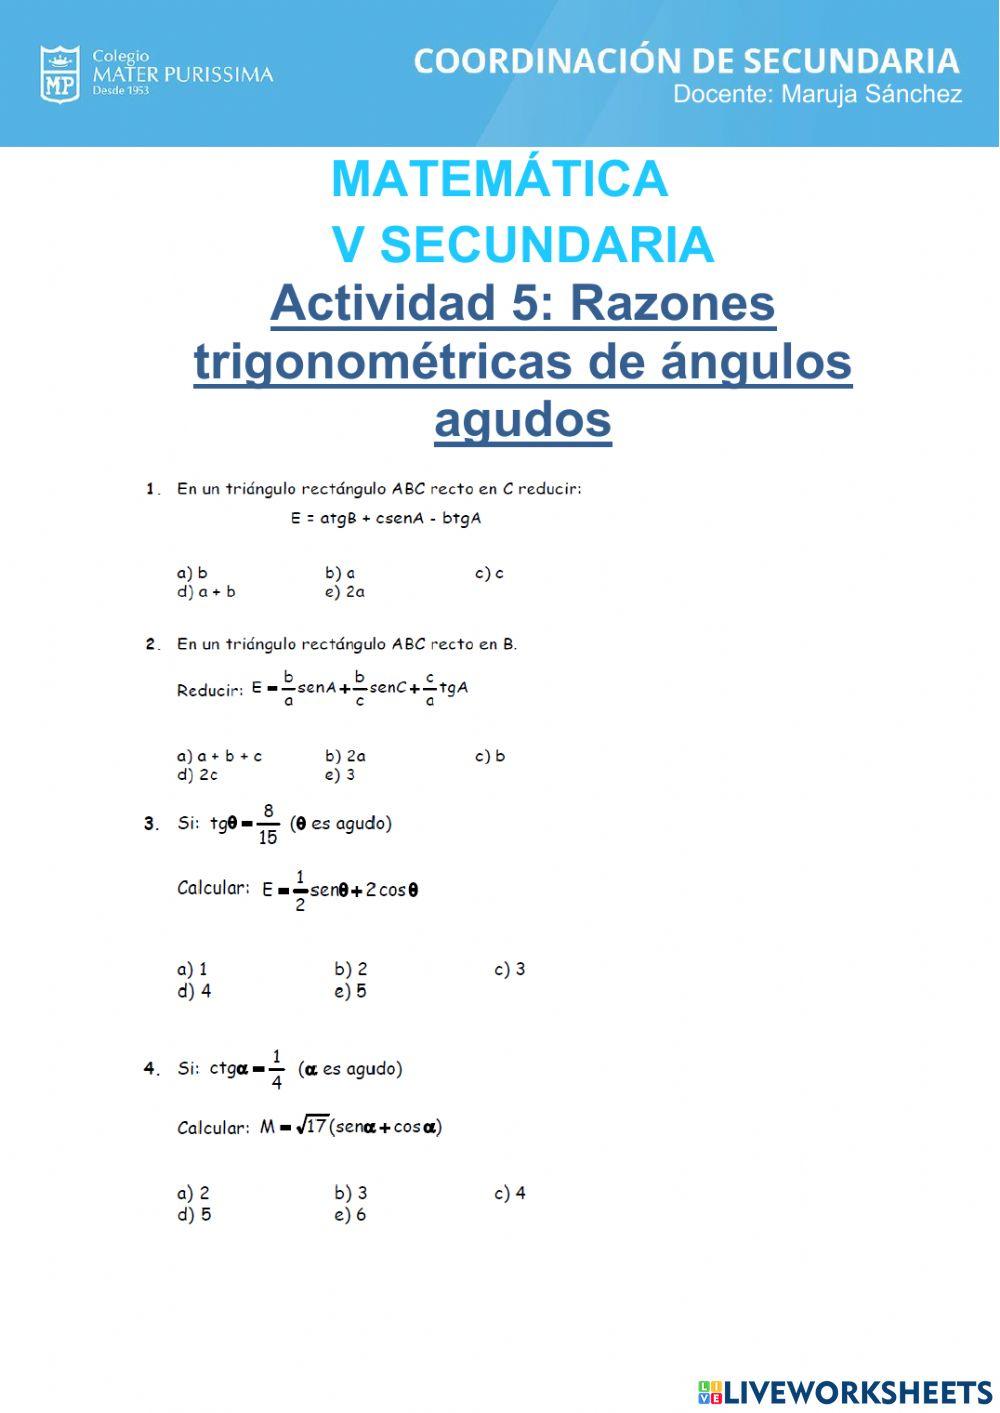 Razones trigonométricas de angulos agudos